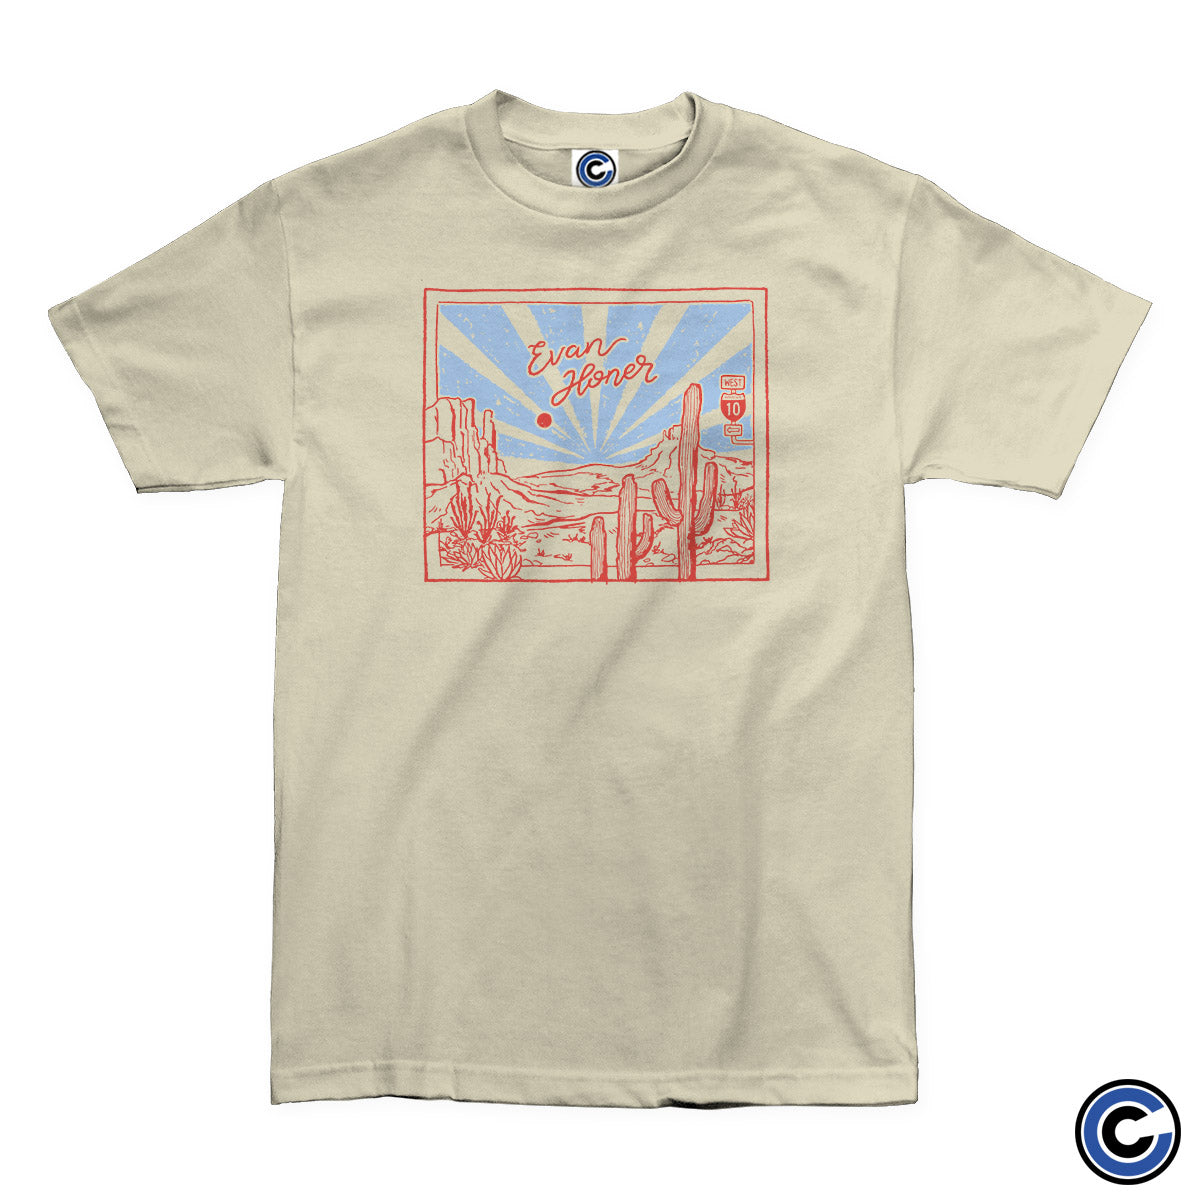 Evan Honer "Desert" Shirt